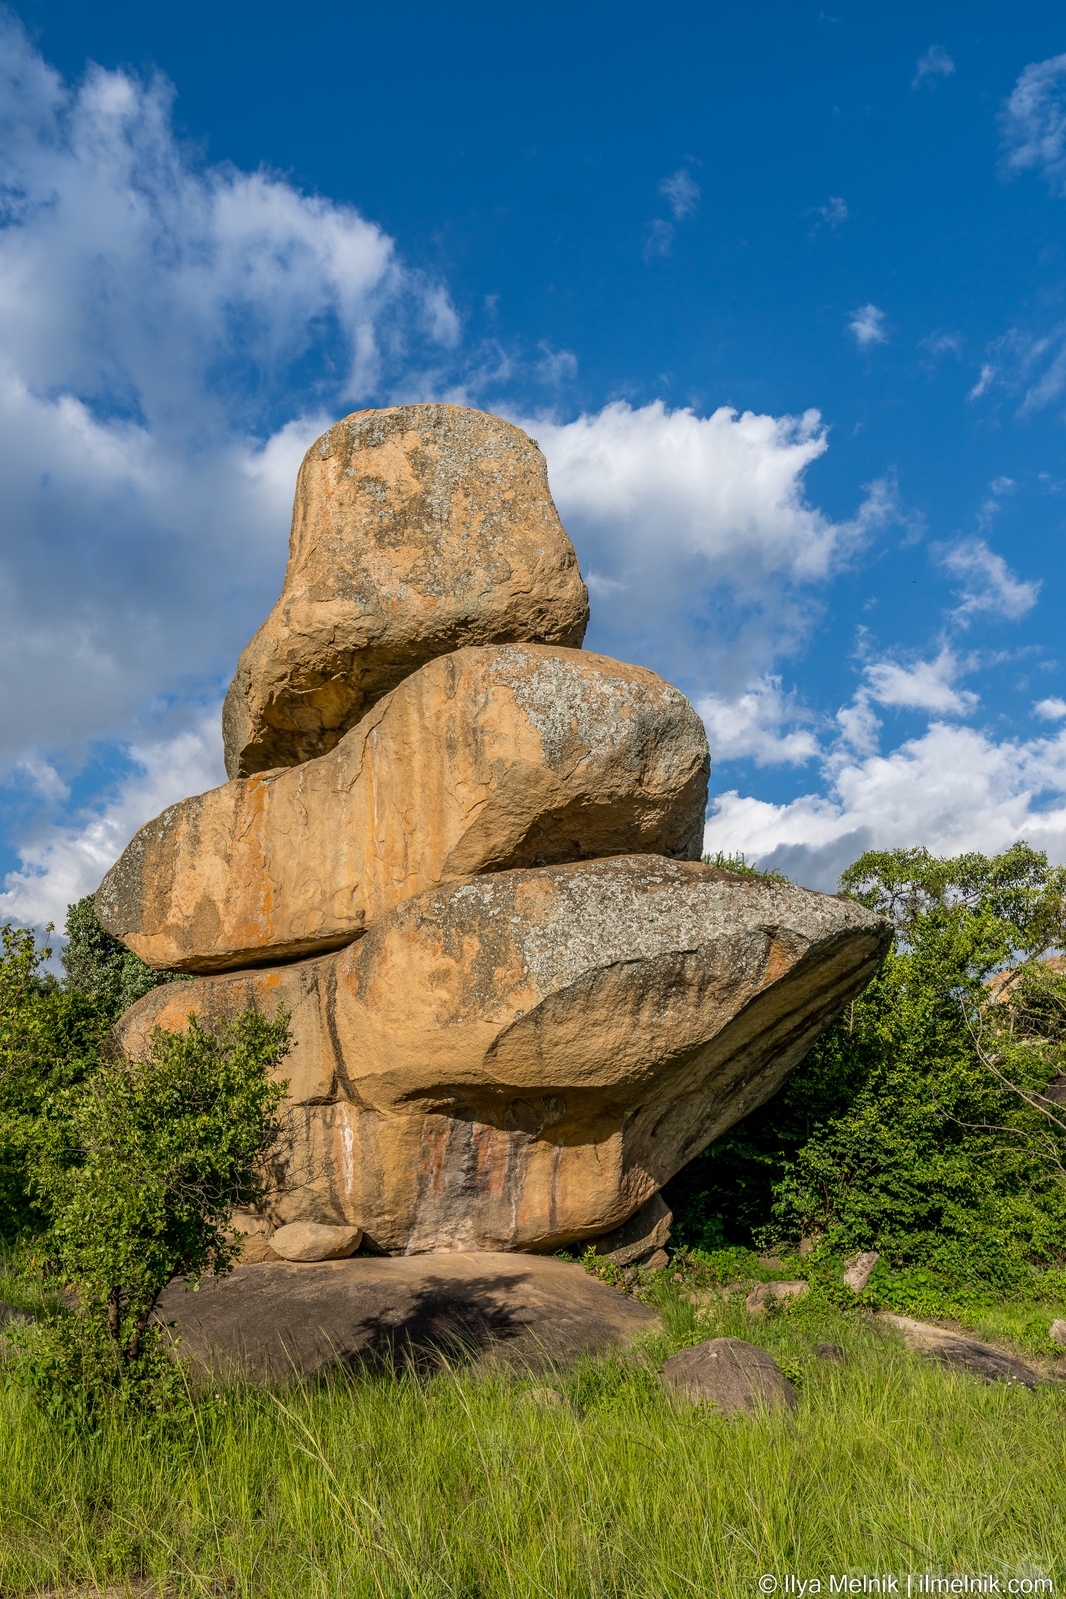 Image of Epworth Balancing Rocks by Ilya Melnik